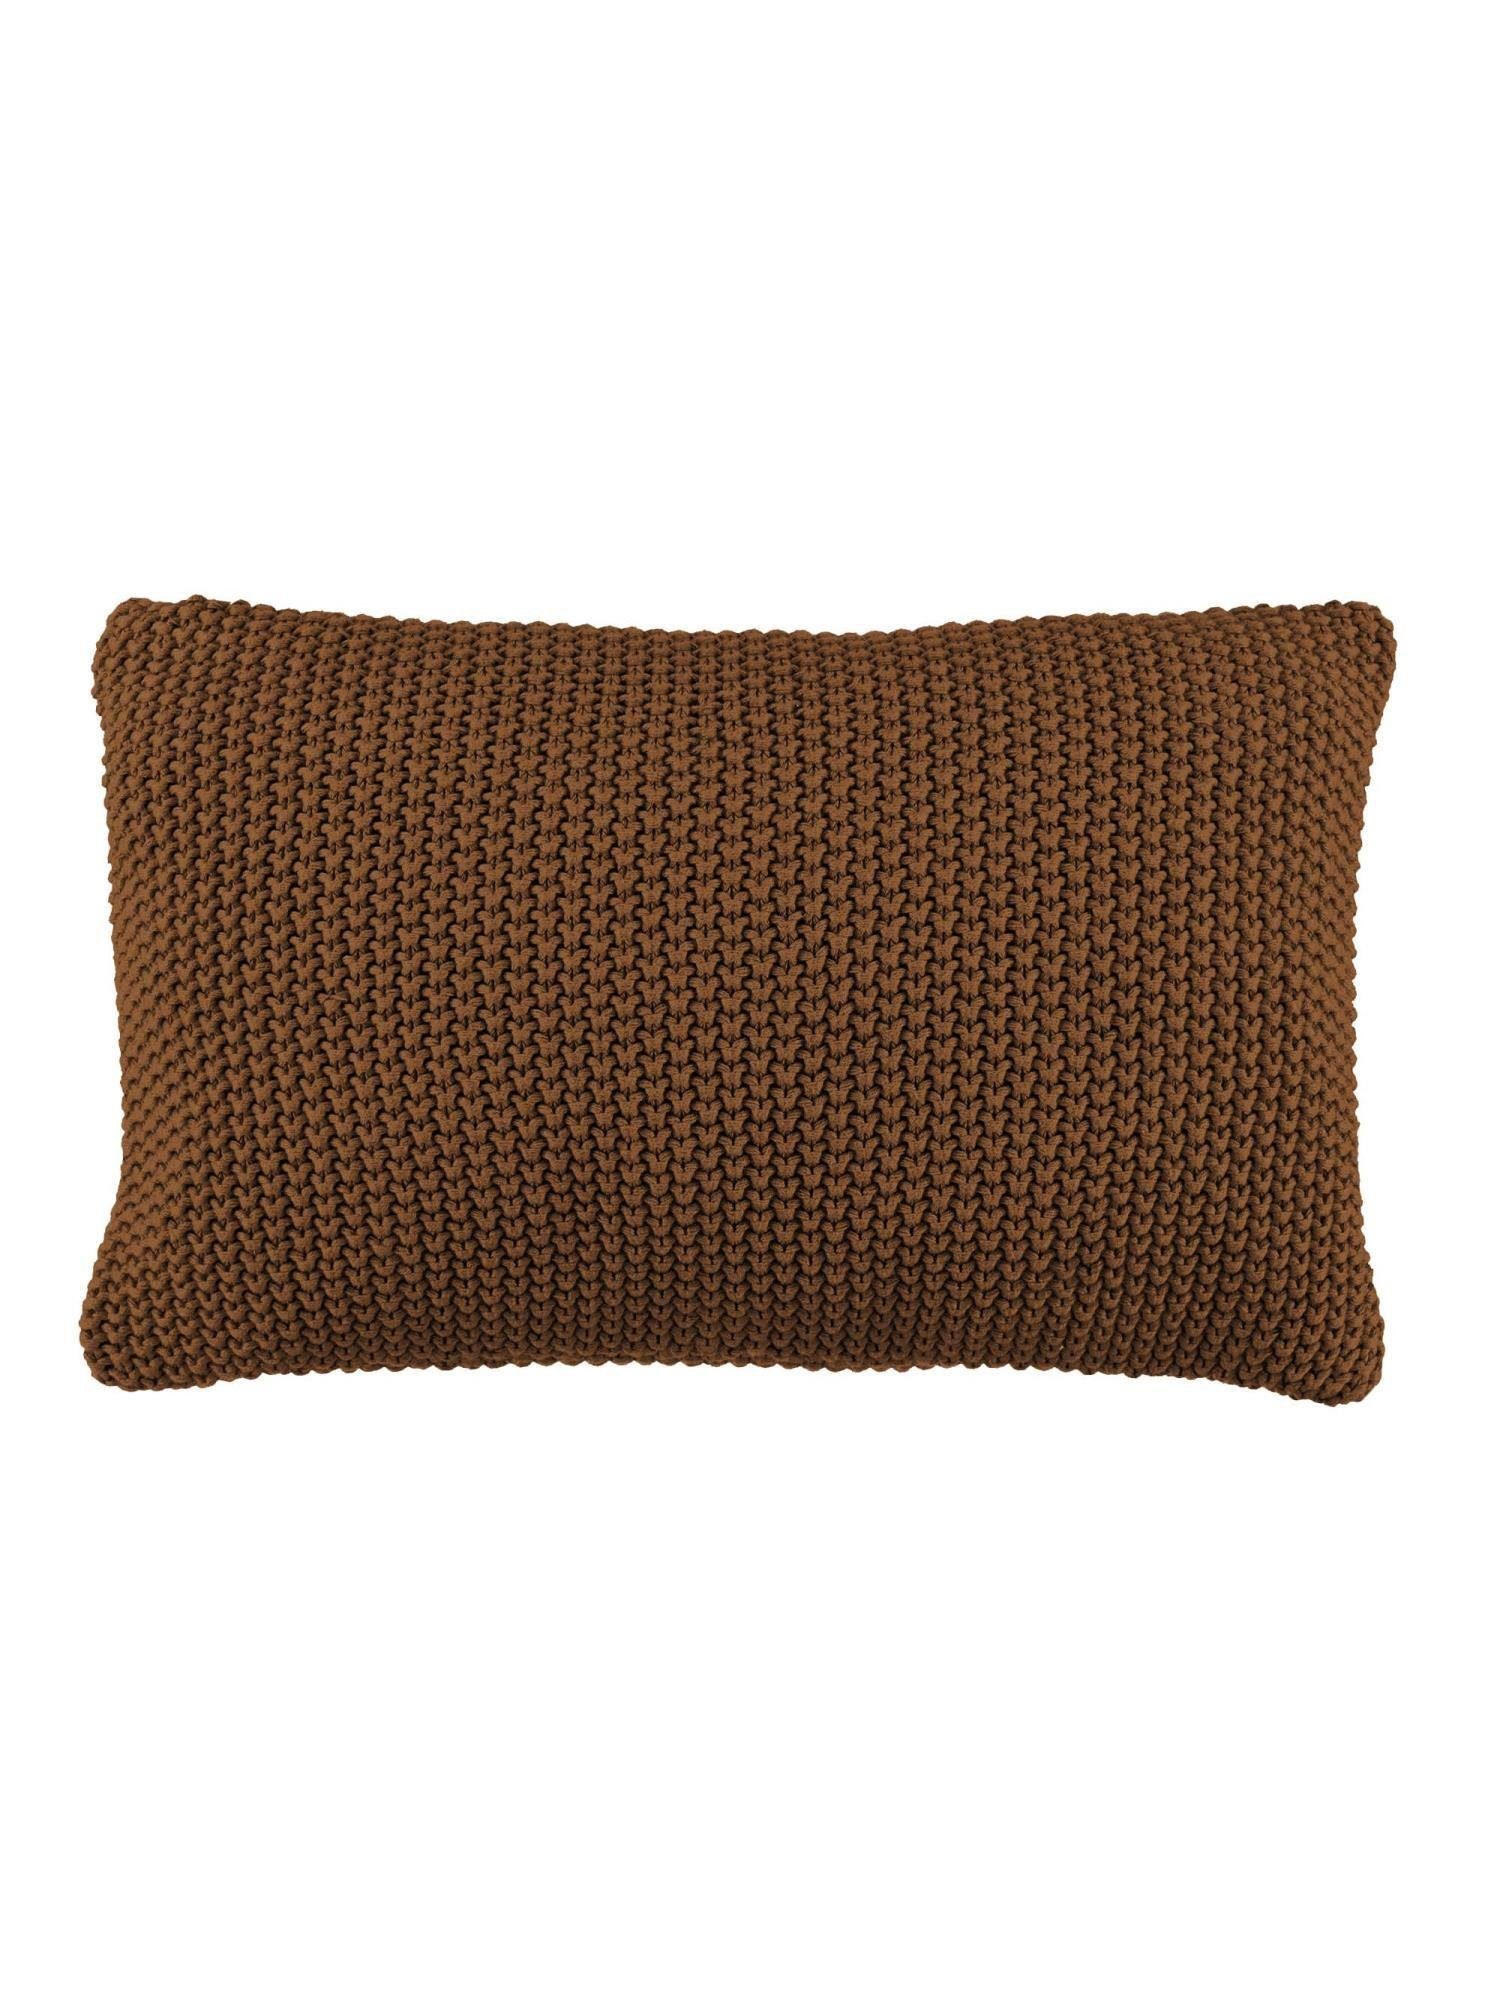 Marc O'Polo Home Dekokissen Nordic knit, aus gestrickter nachhaltiger Baumwolle Toffee Brown